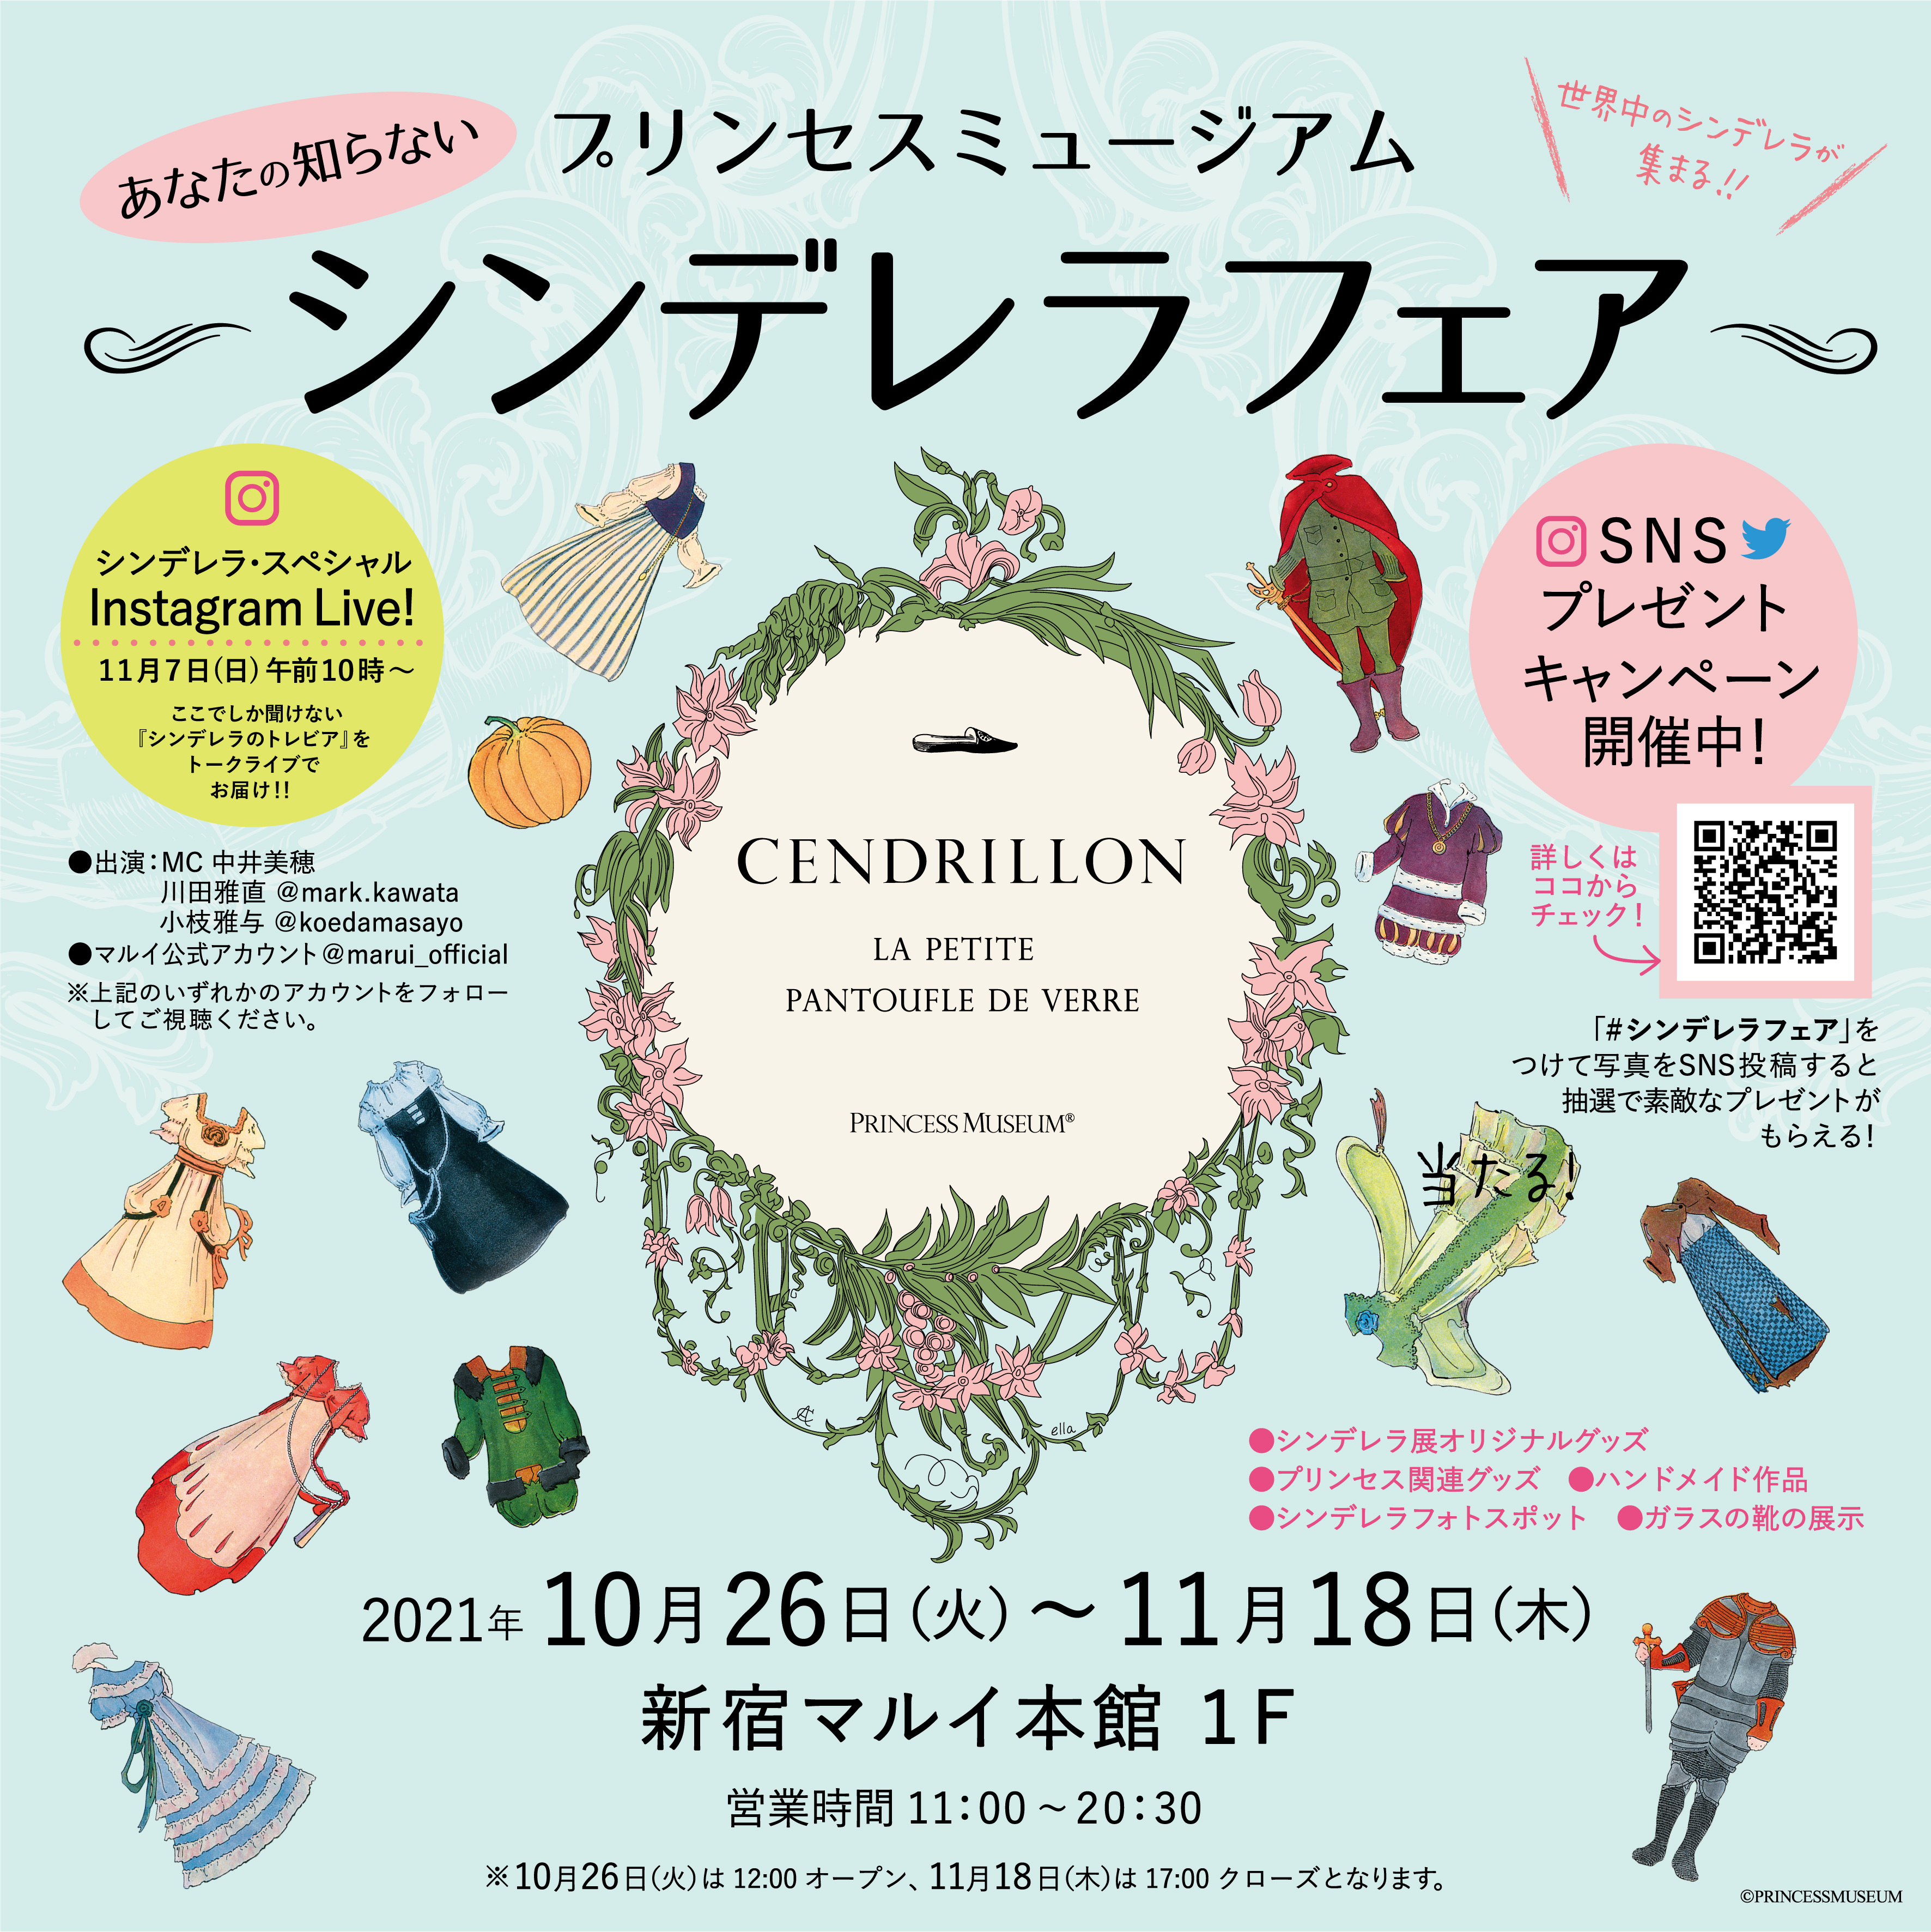 世界中のシンデレラが集まる「シンデレラフェア」新宿マルイで期間限定・開催中！11/18(木)まで♩